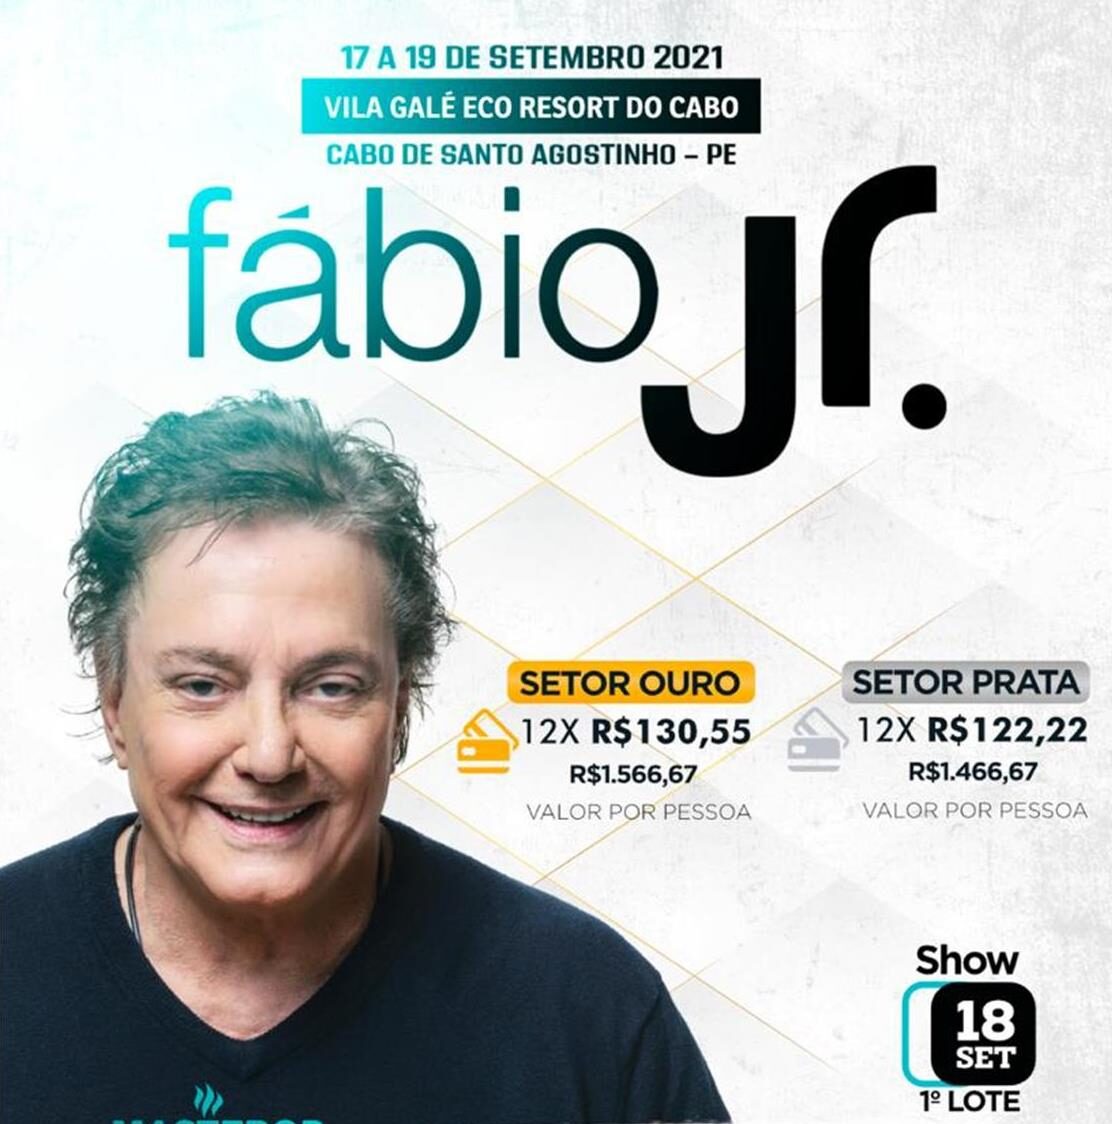 Show Fabio Junior Vila Galé Cabo de Santo Agostinho – PE | :: Teltur  Viagens & Turismo - Natal/RN ::